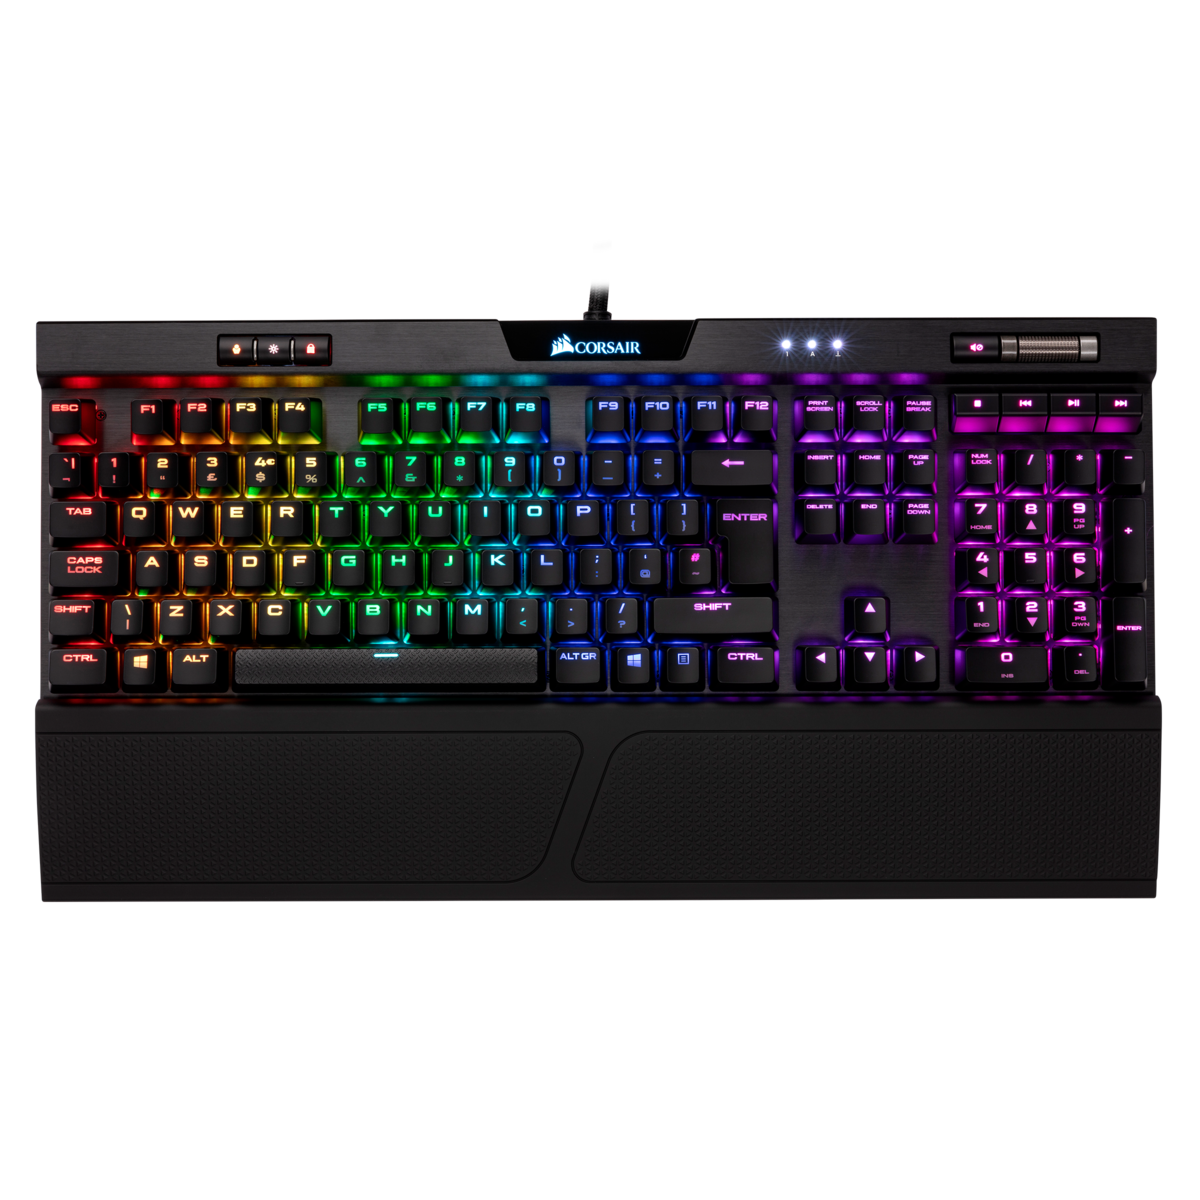 K70 MK.2 MX Silent RGB Gaming Keyboard